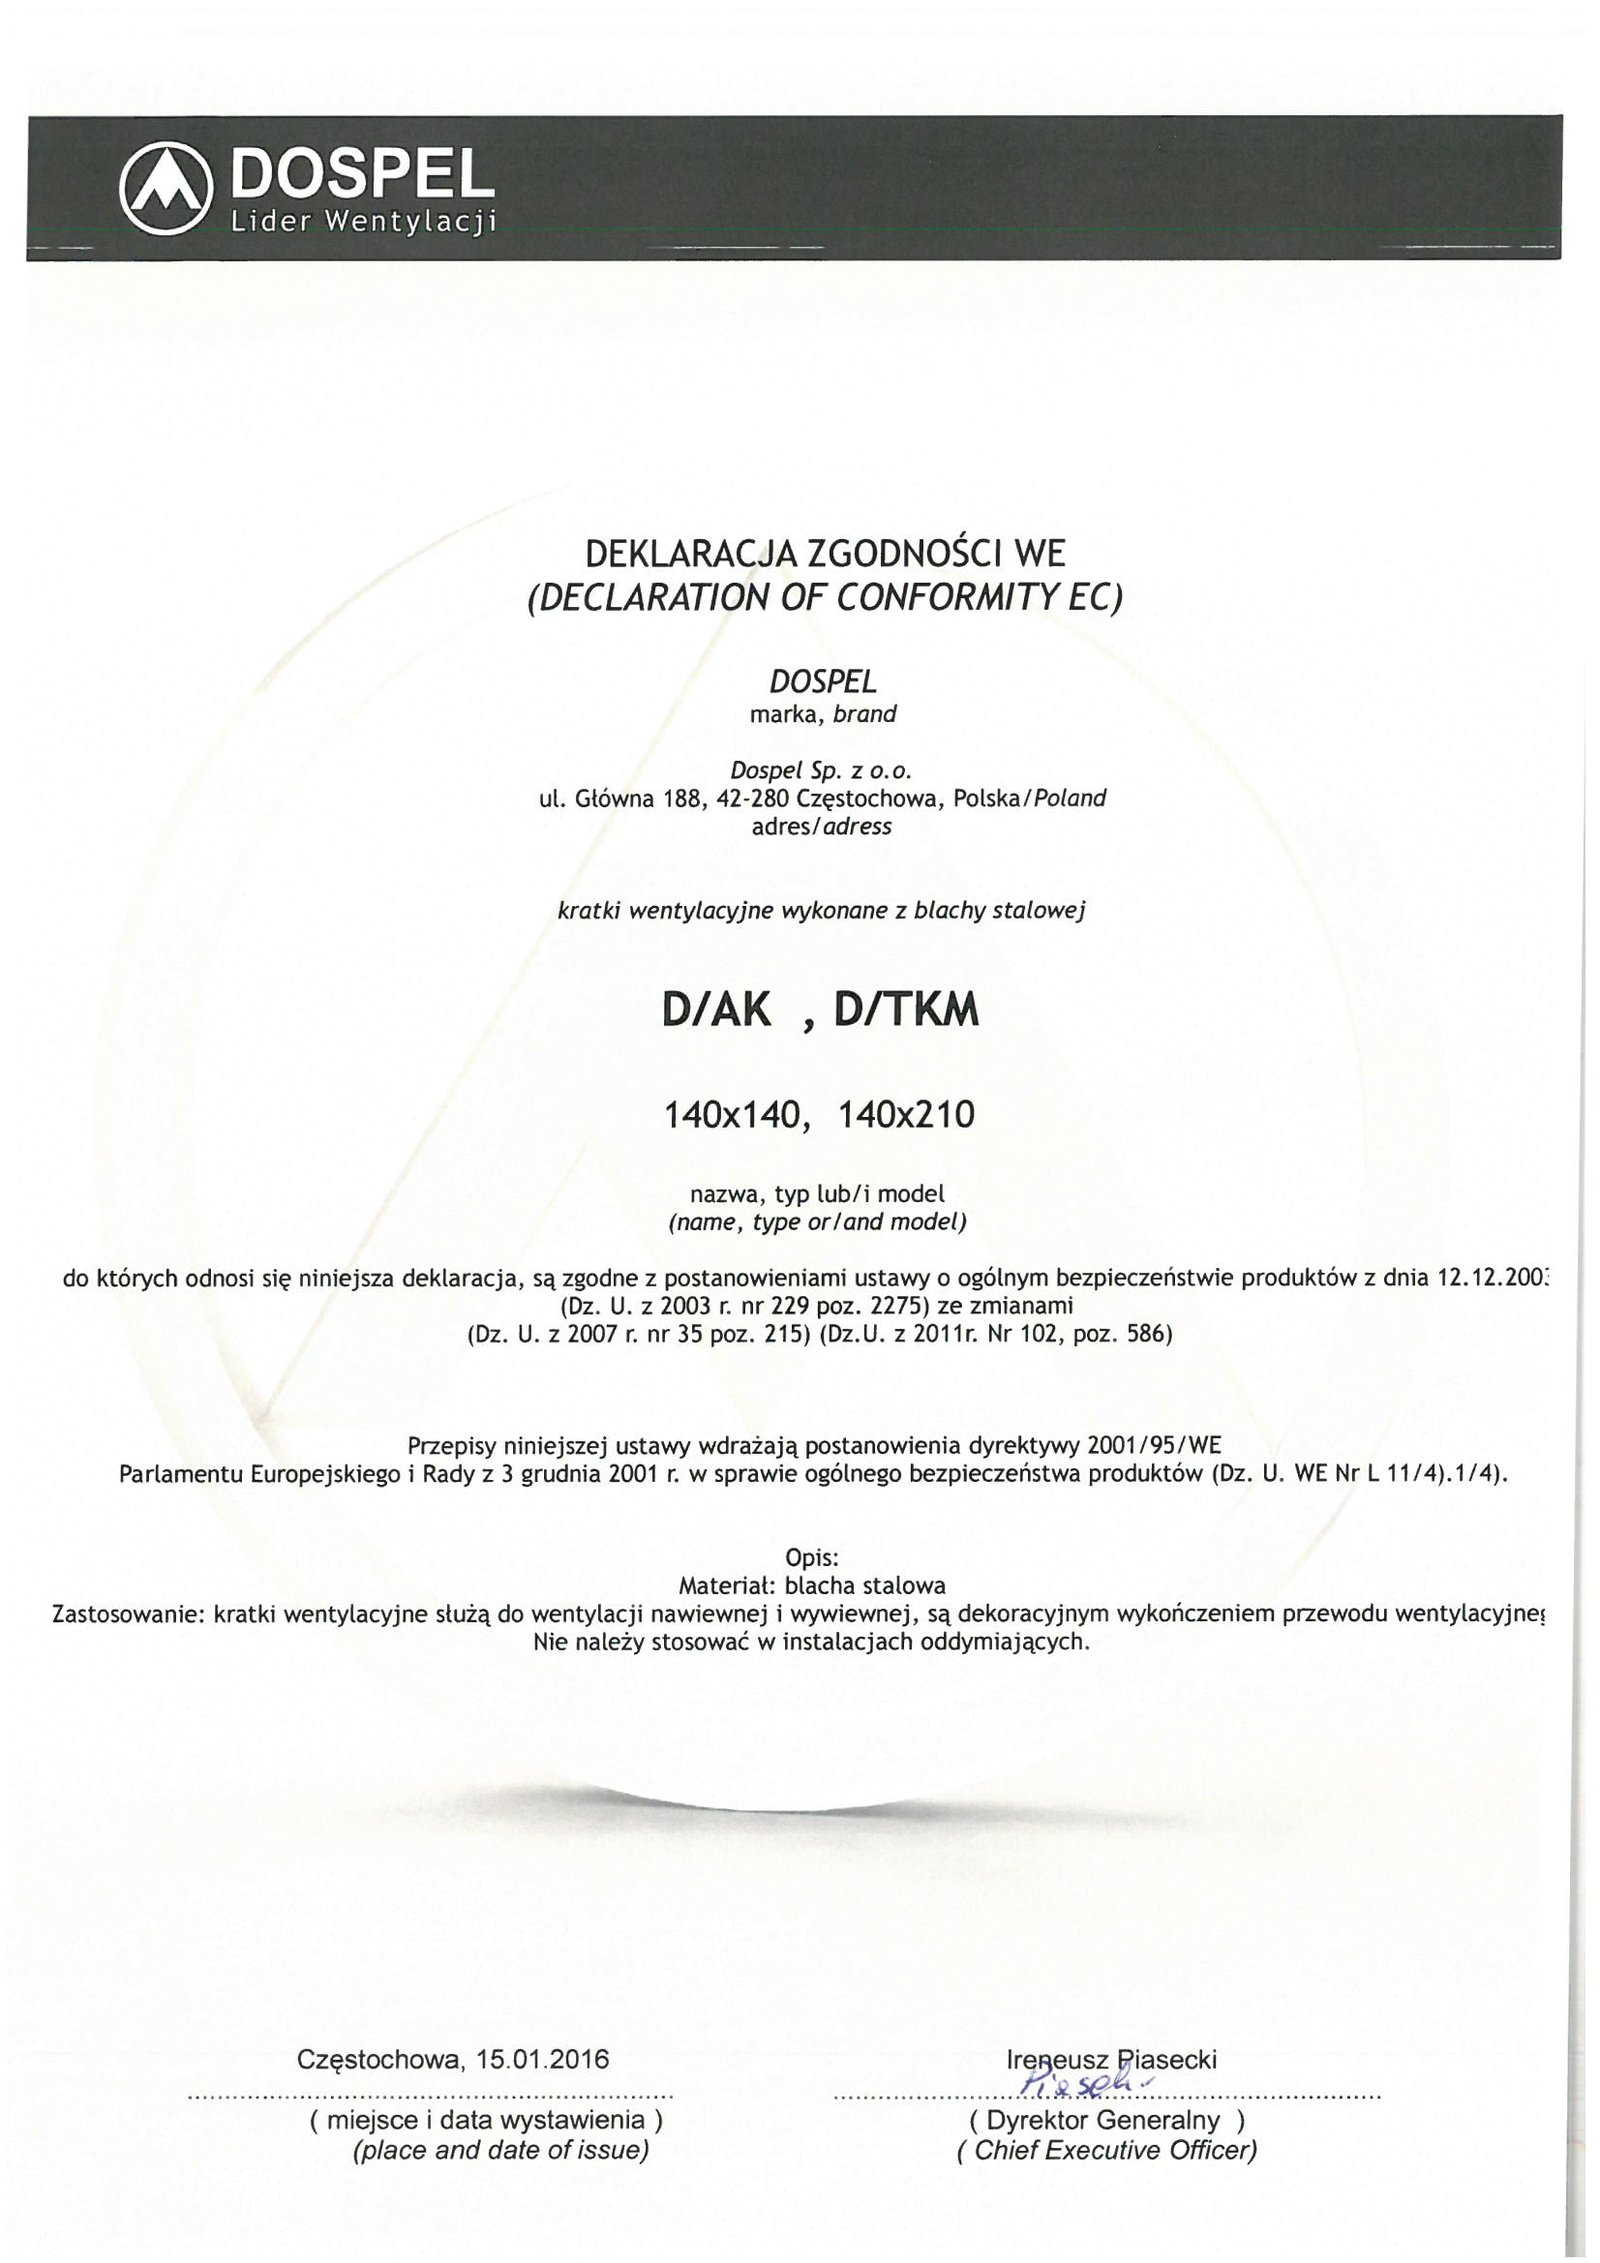 Kratka wentylacyjna stalowa D/AK D/TKM, certyfikat, deklaracja zgodności, producent wentylatorów, Dospel